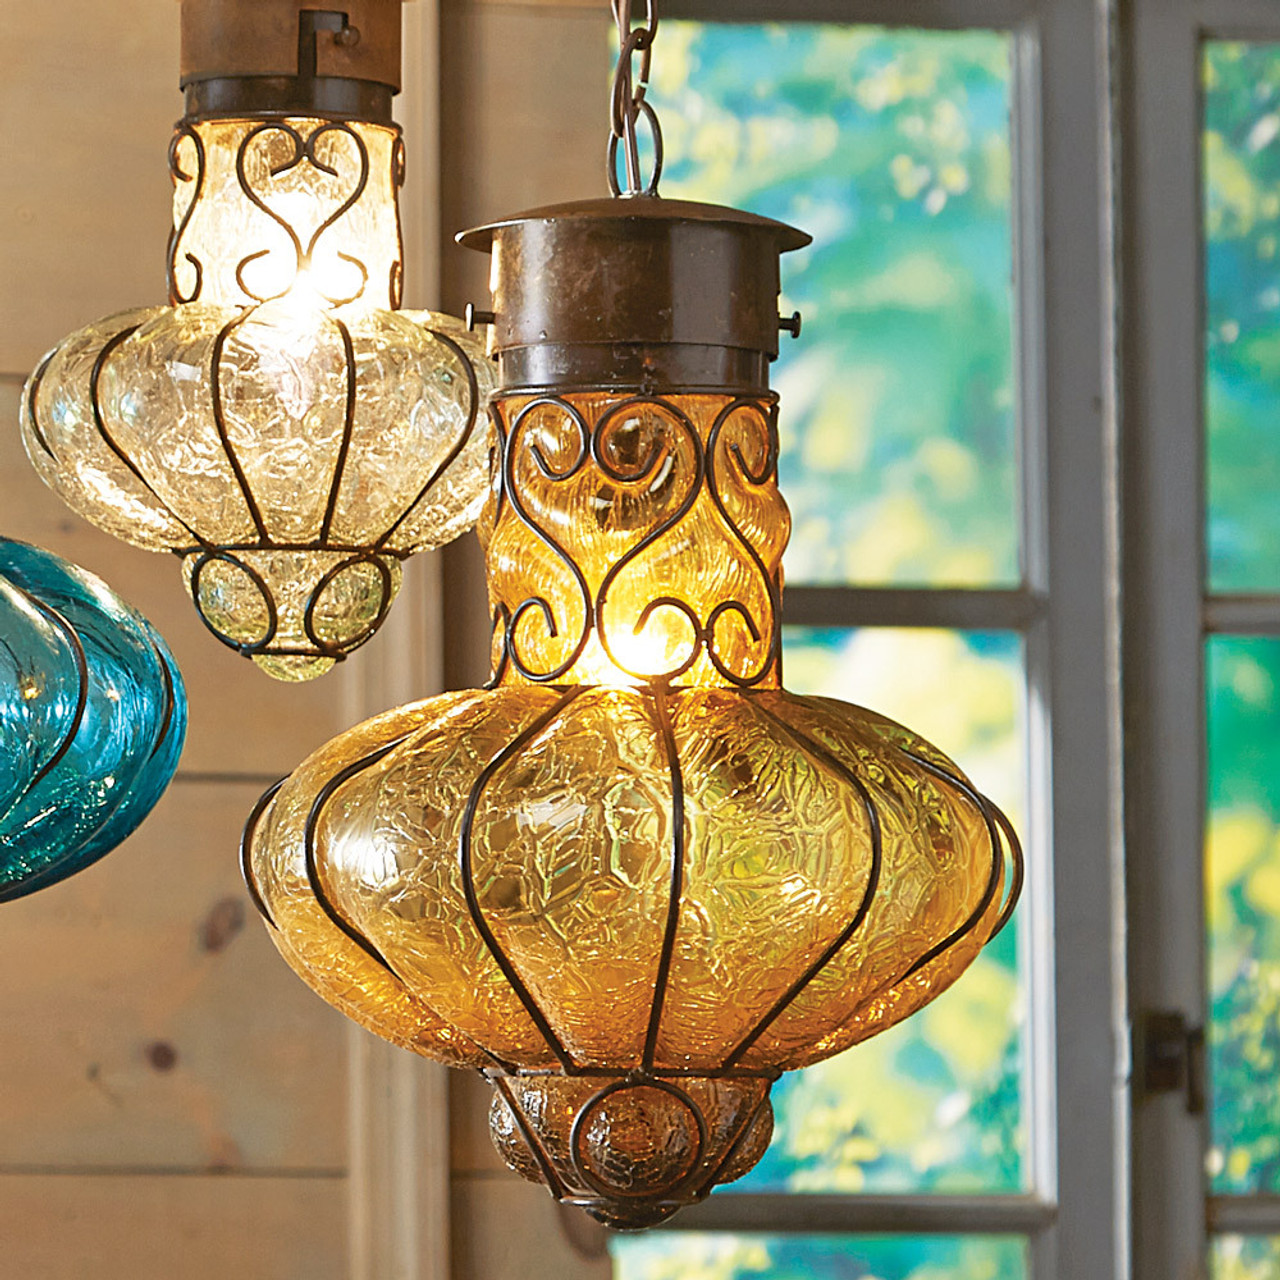 Southwestern Flower Glass Pendant Light - Large - Turquoise - 12Dia - Cabin Lighting from Black Forest Decor